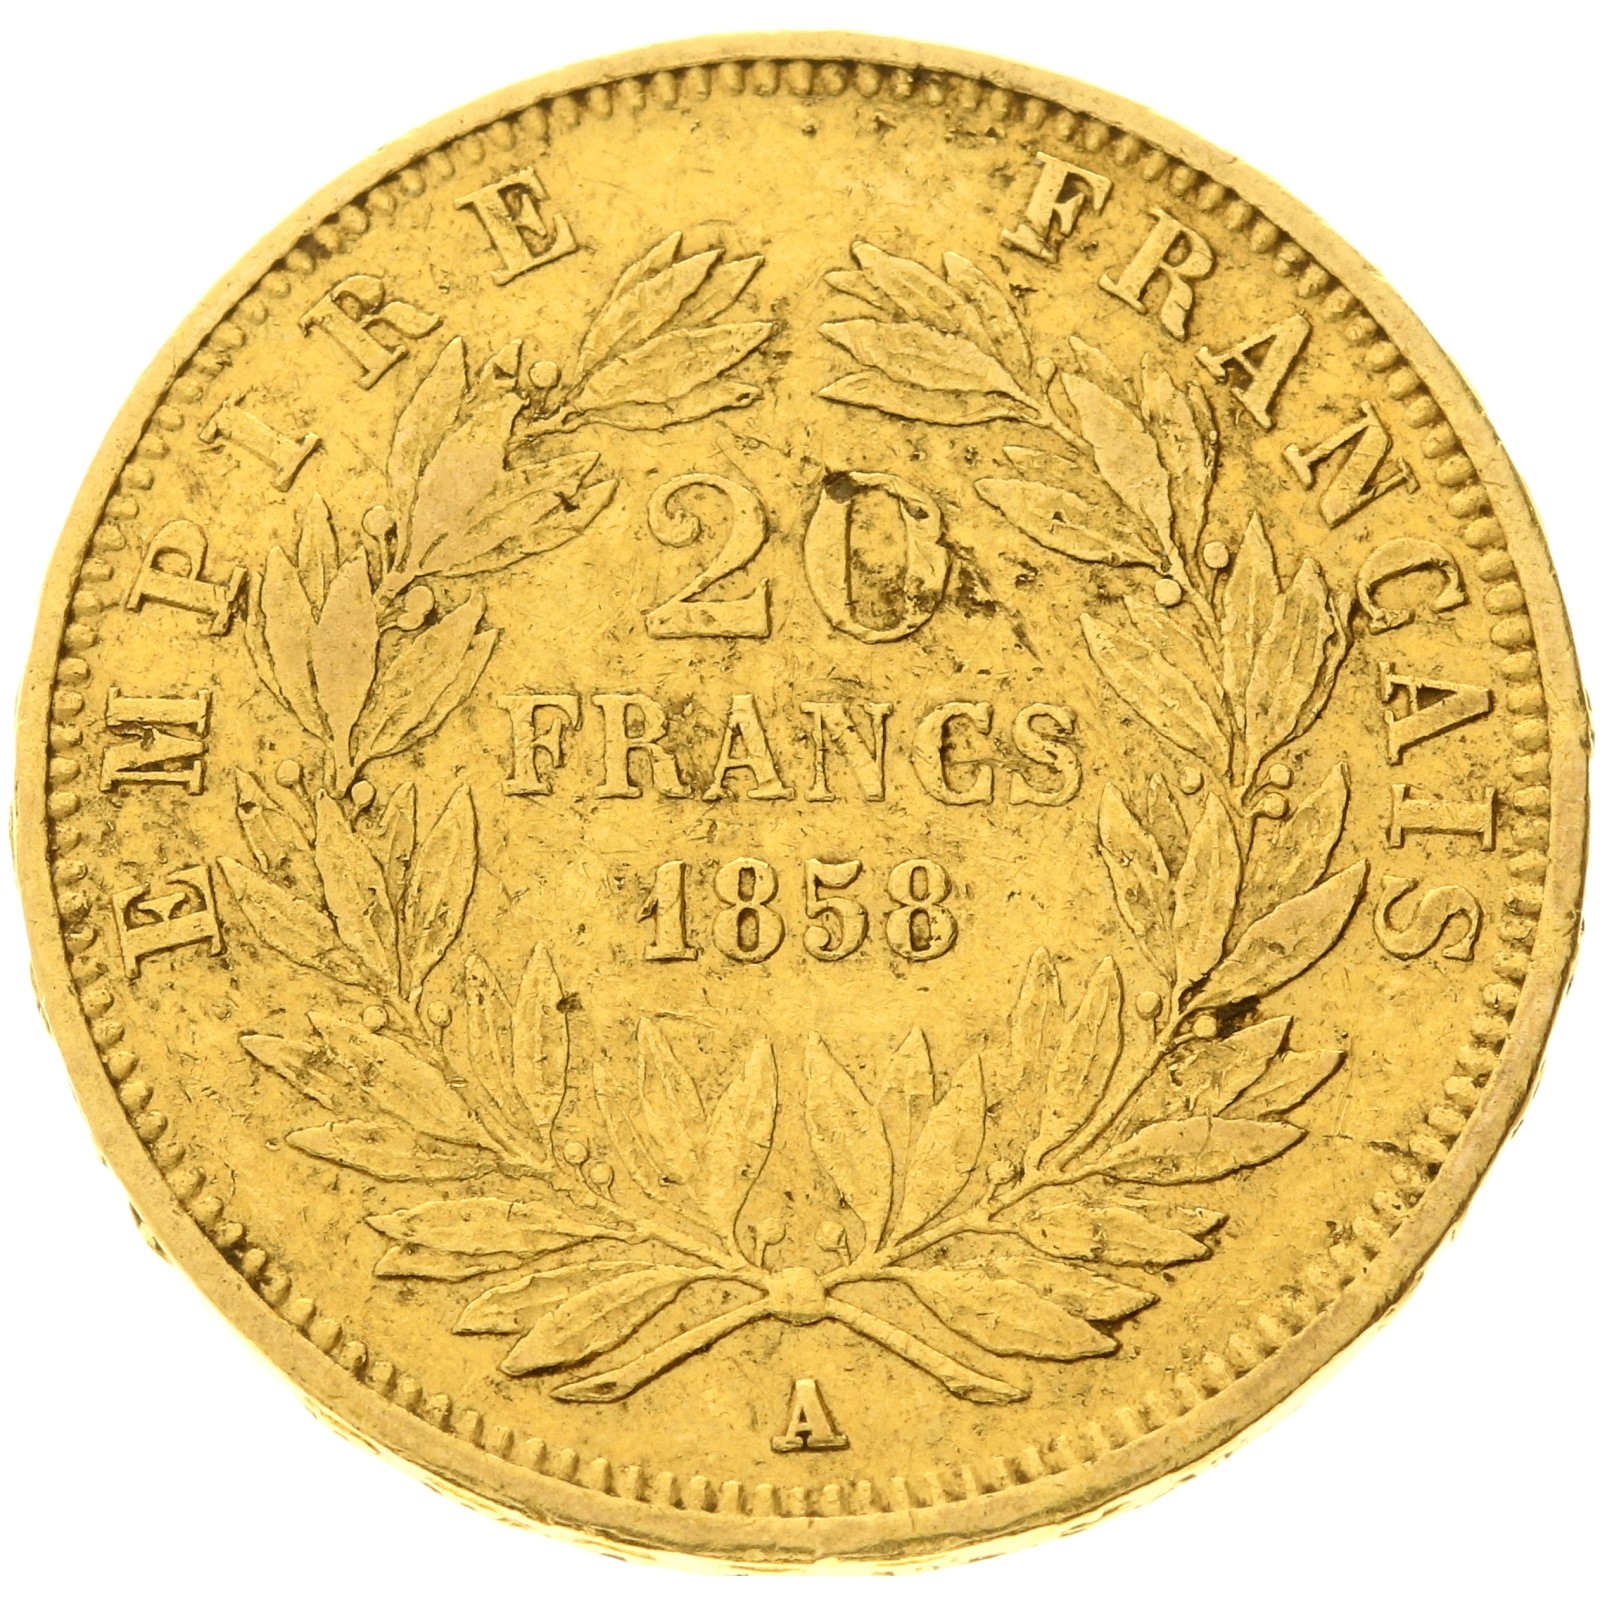 France - 20 Francs - 1858 - A - Napoleon III 